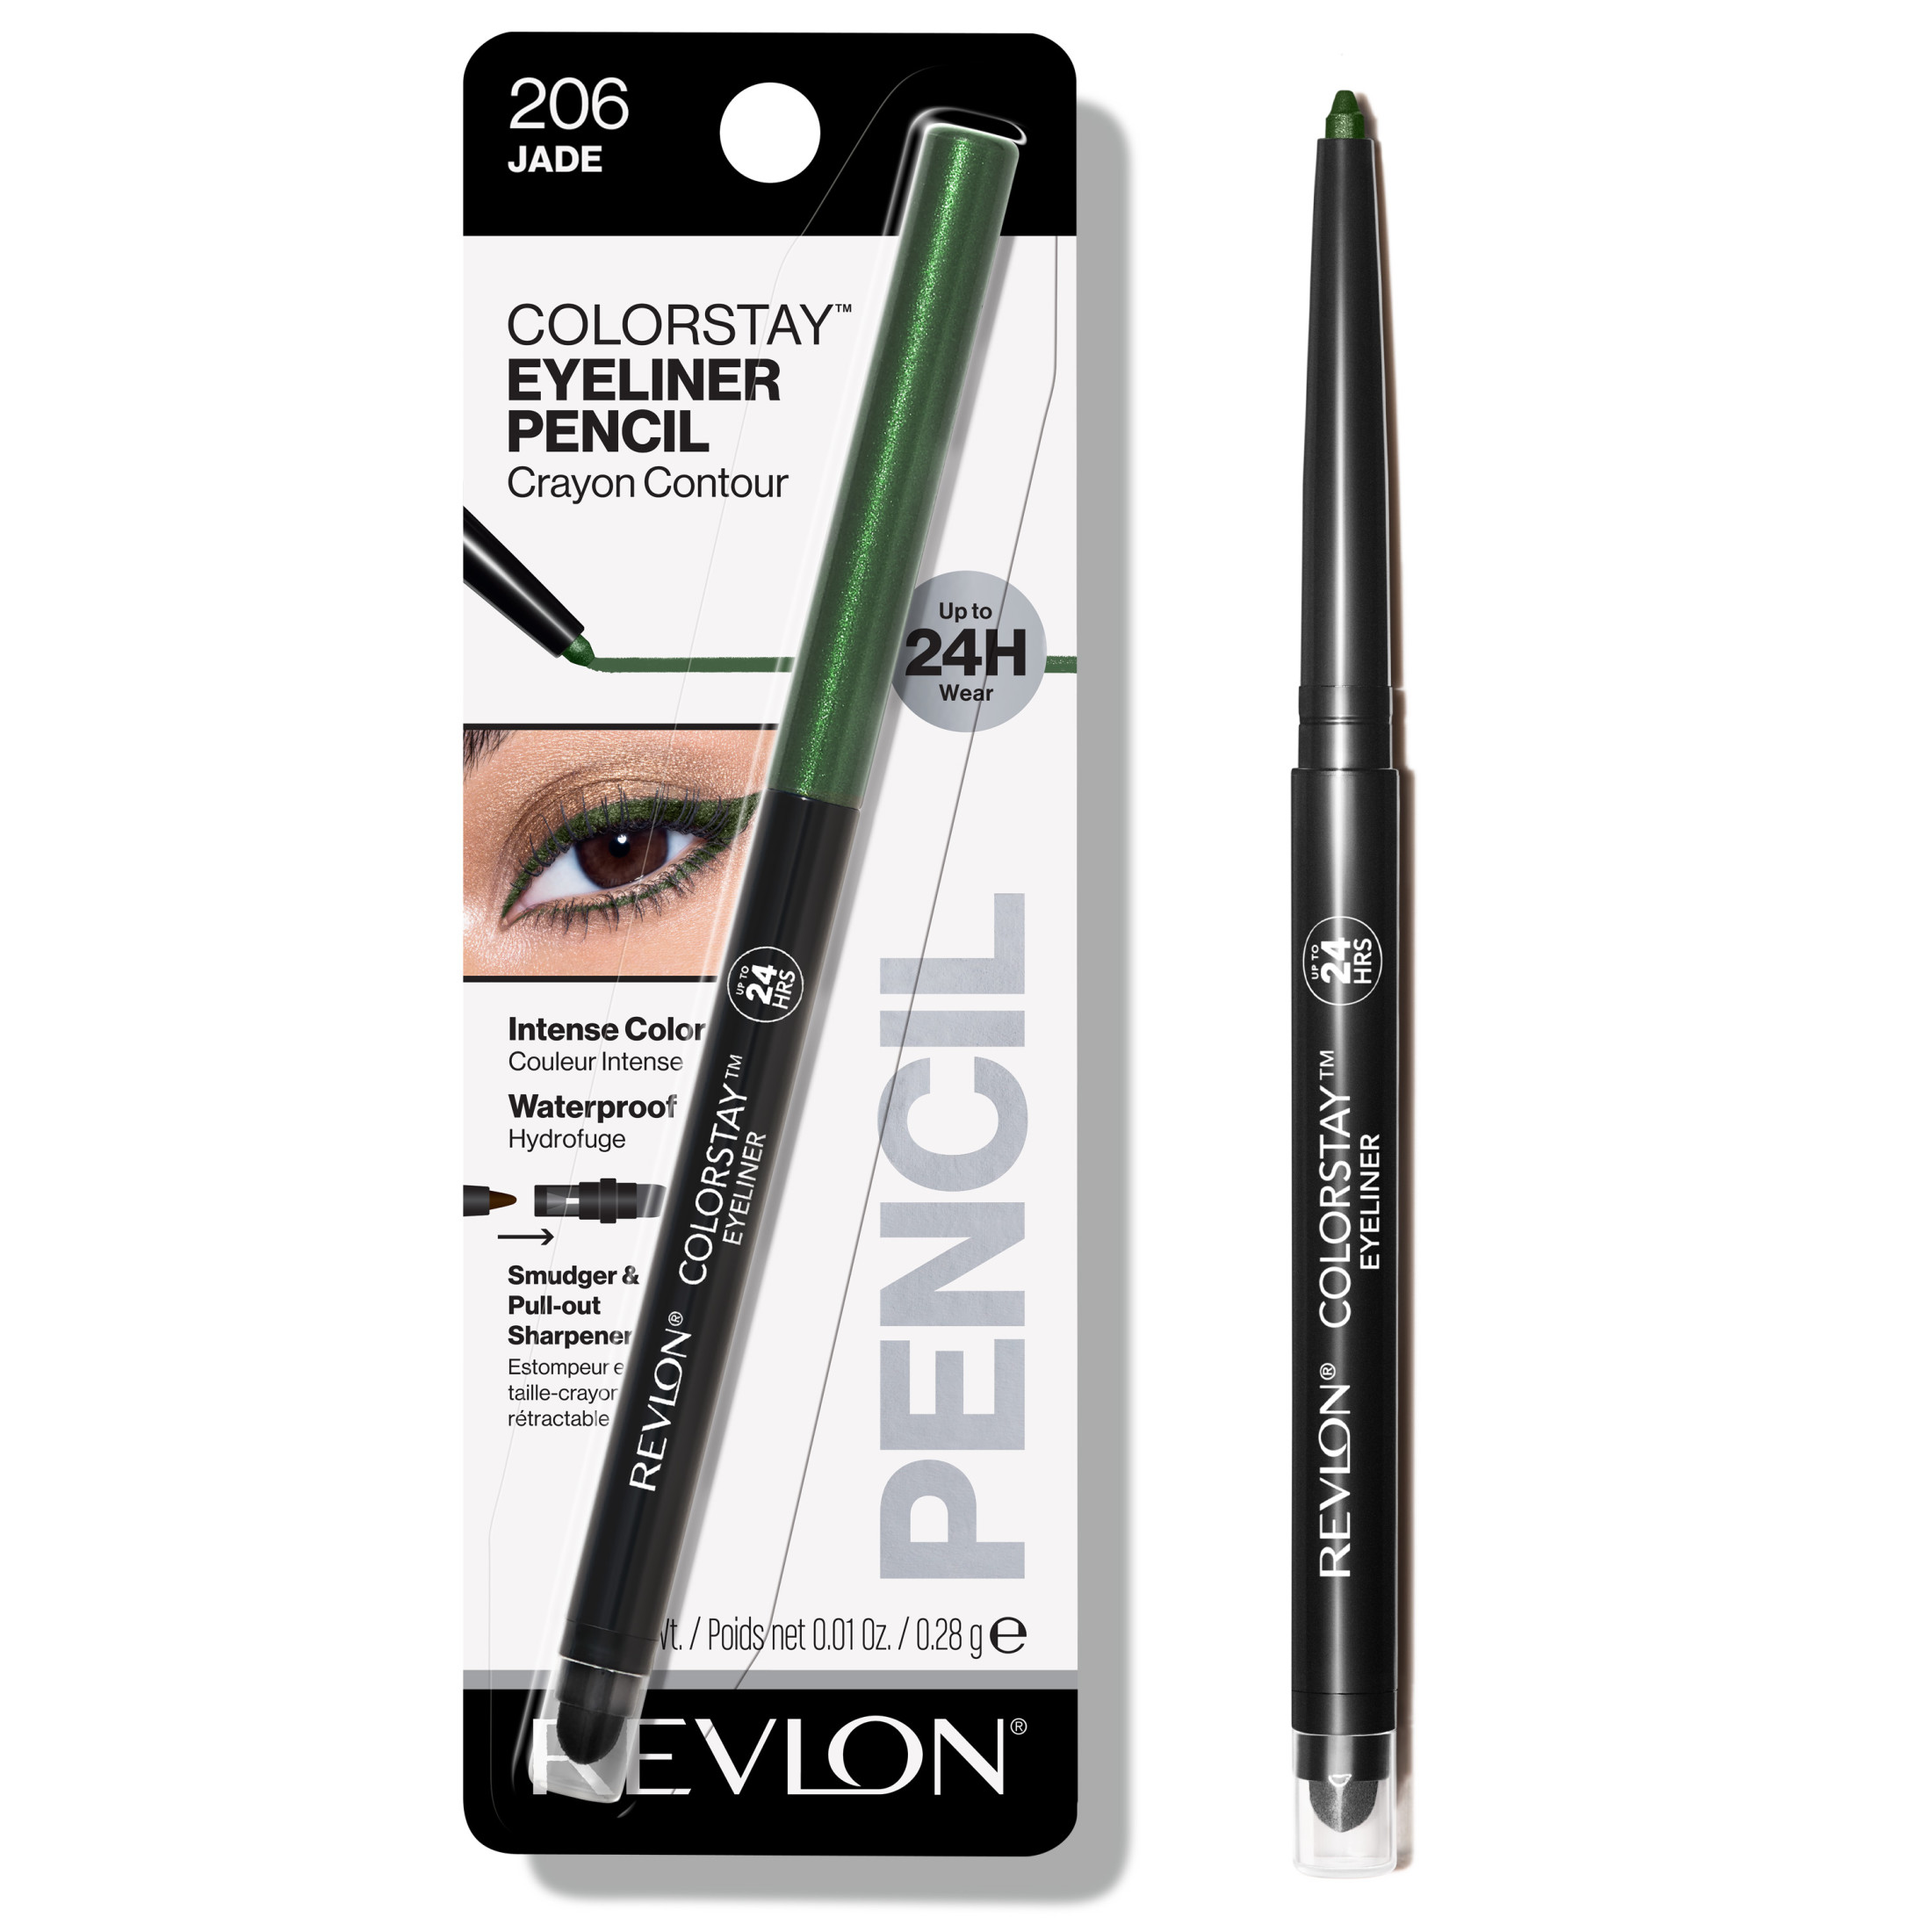 Revlon ColorStay Waterproof Eyeliner Pencil, 24HR Wear, Built-in Sharpener, 206 Jade, 0.01 oz - image 1 of 9